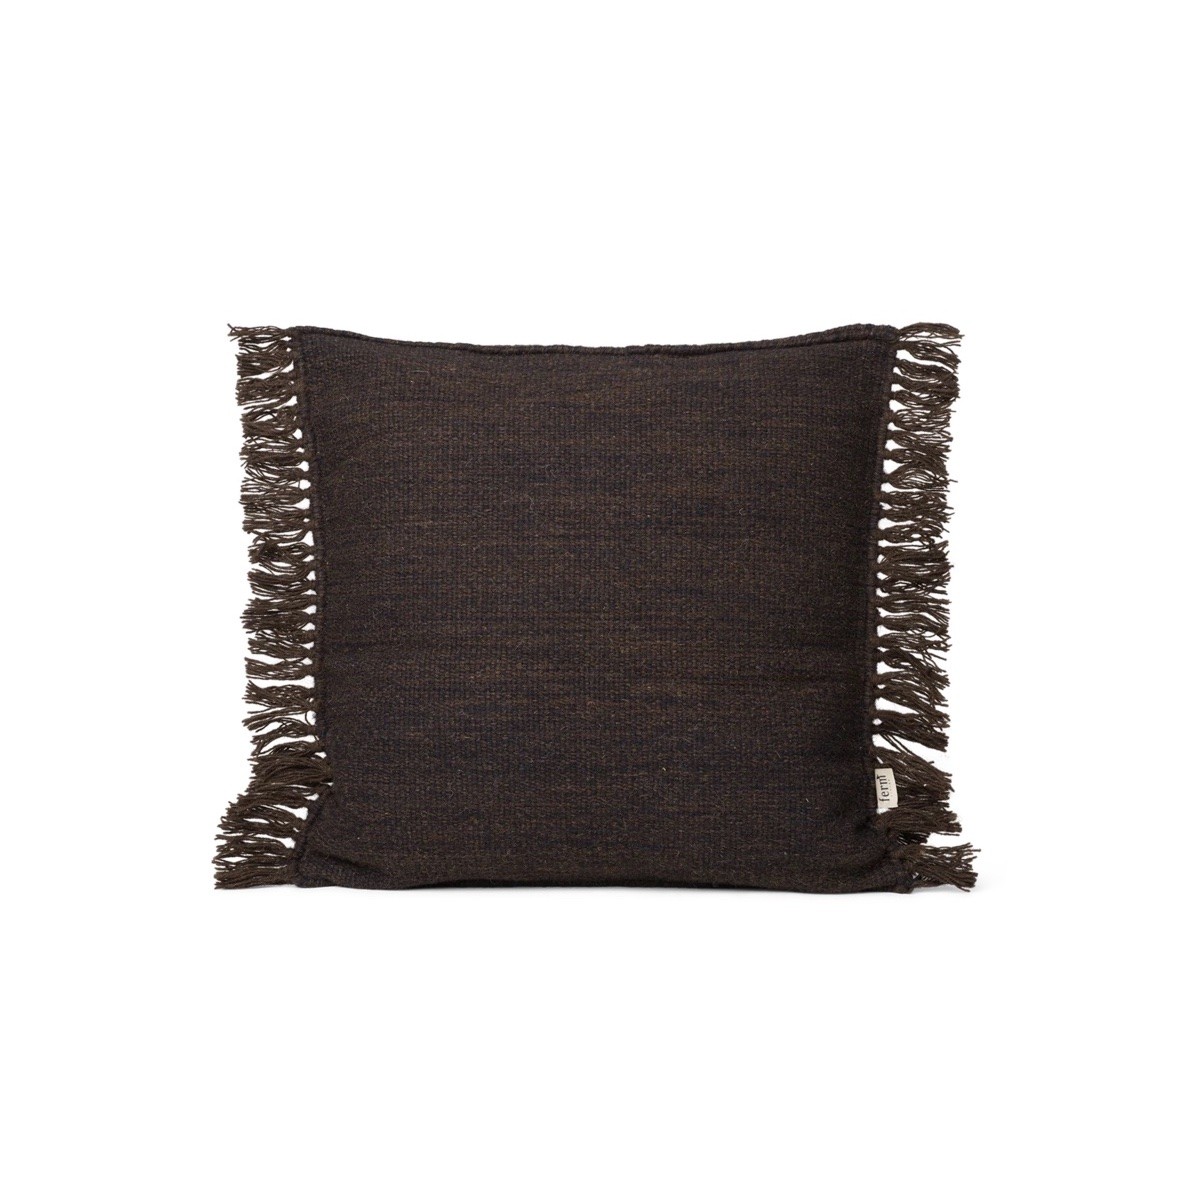 80x80cm - Kelim Fringe cushion cover - Dark Melange